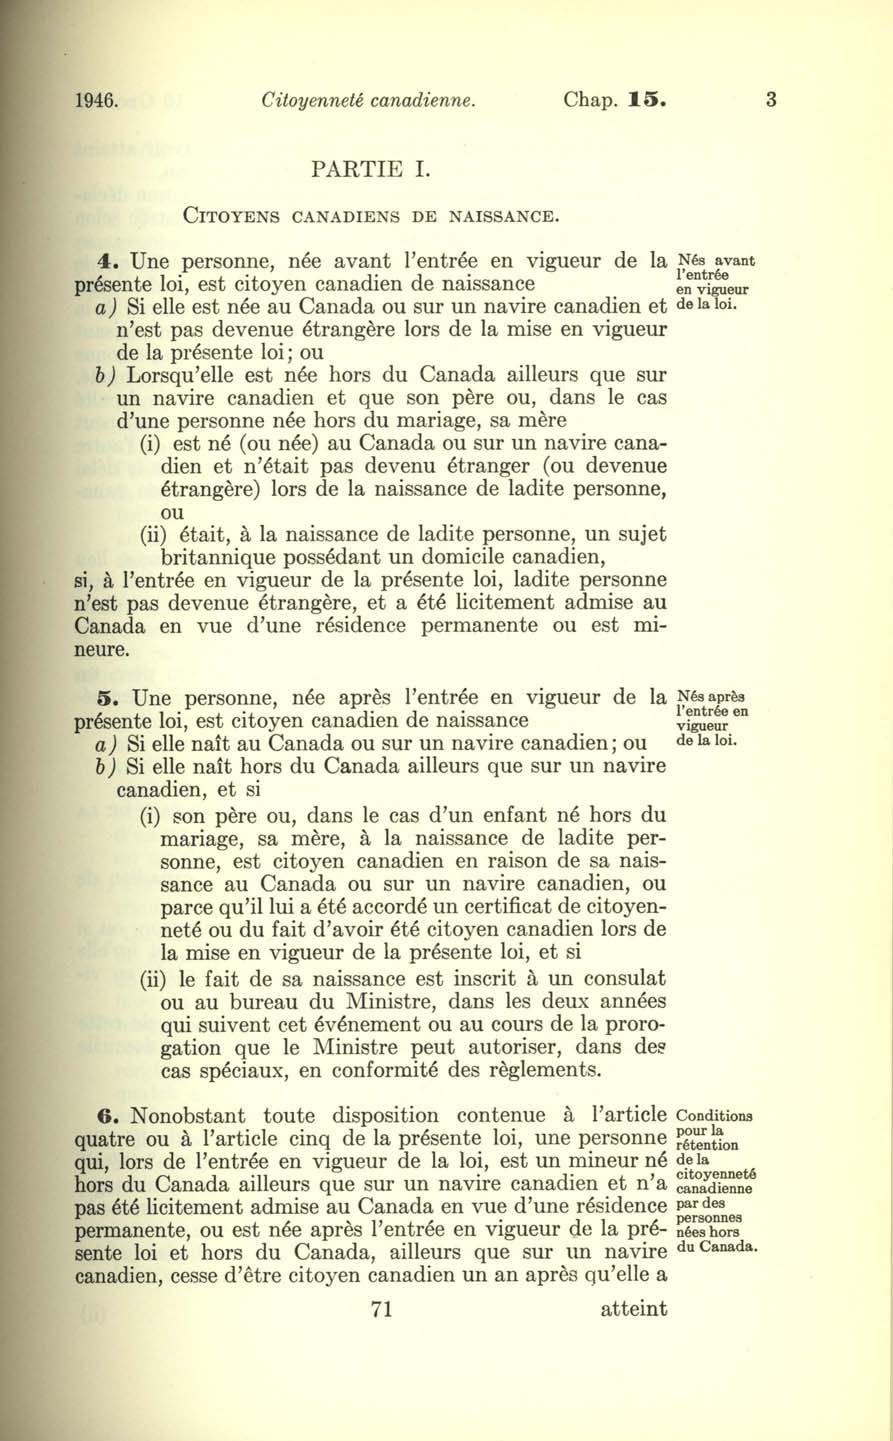 Chap. 15 Page 71 Loi sur la citoyenneté canadienne, 1947